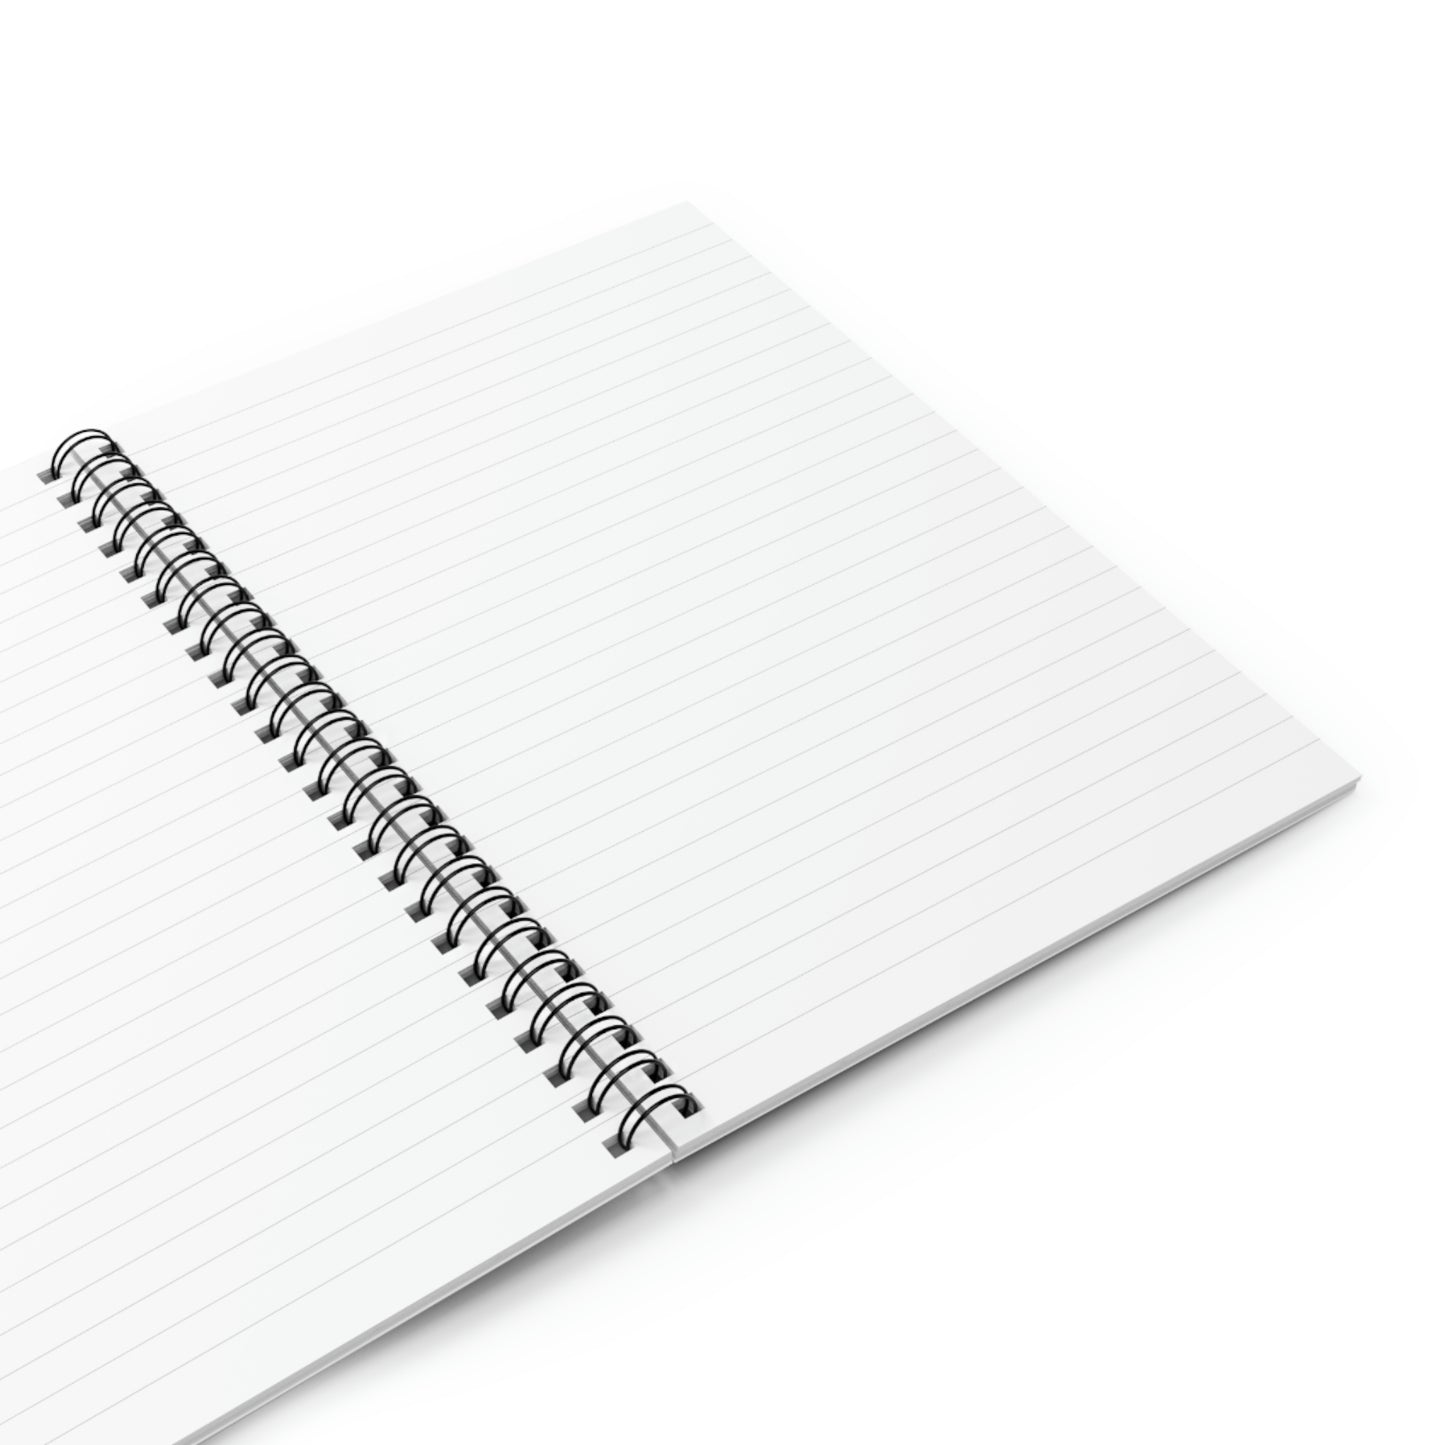 DT Spiral Notebook - Ruled Line